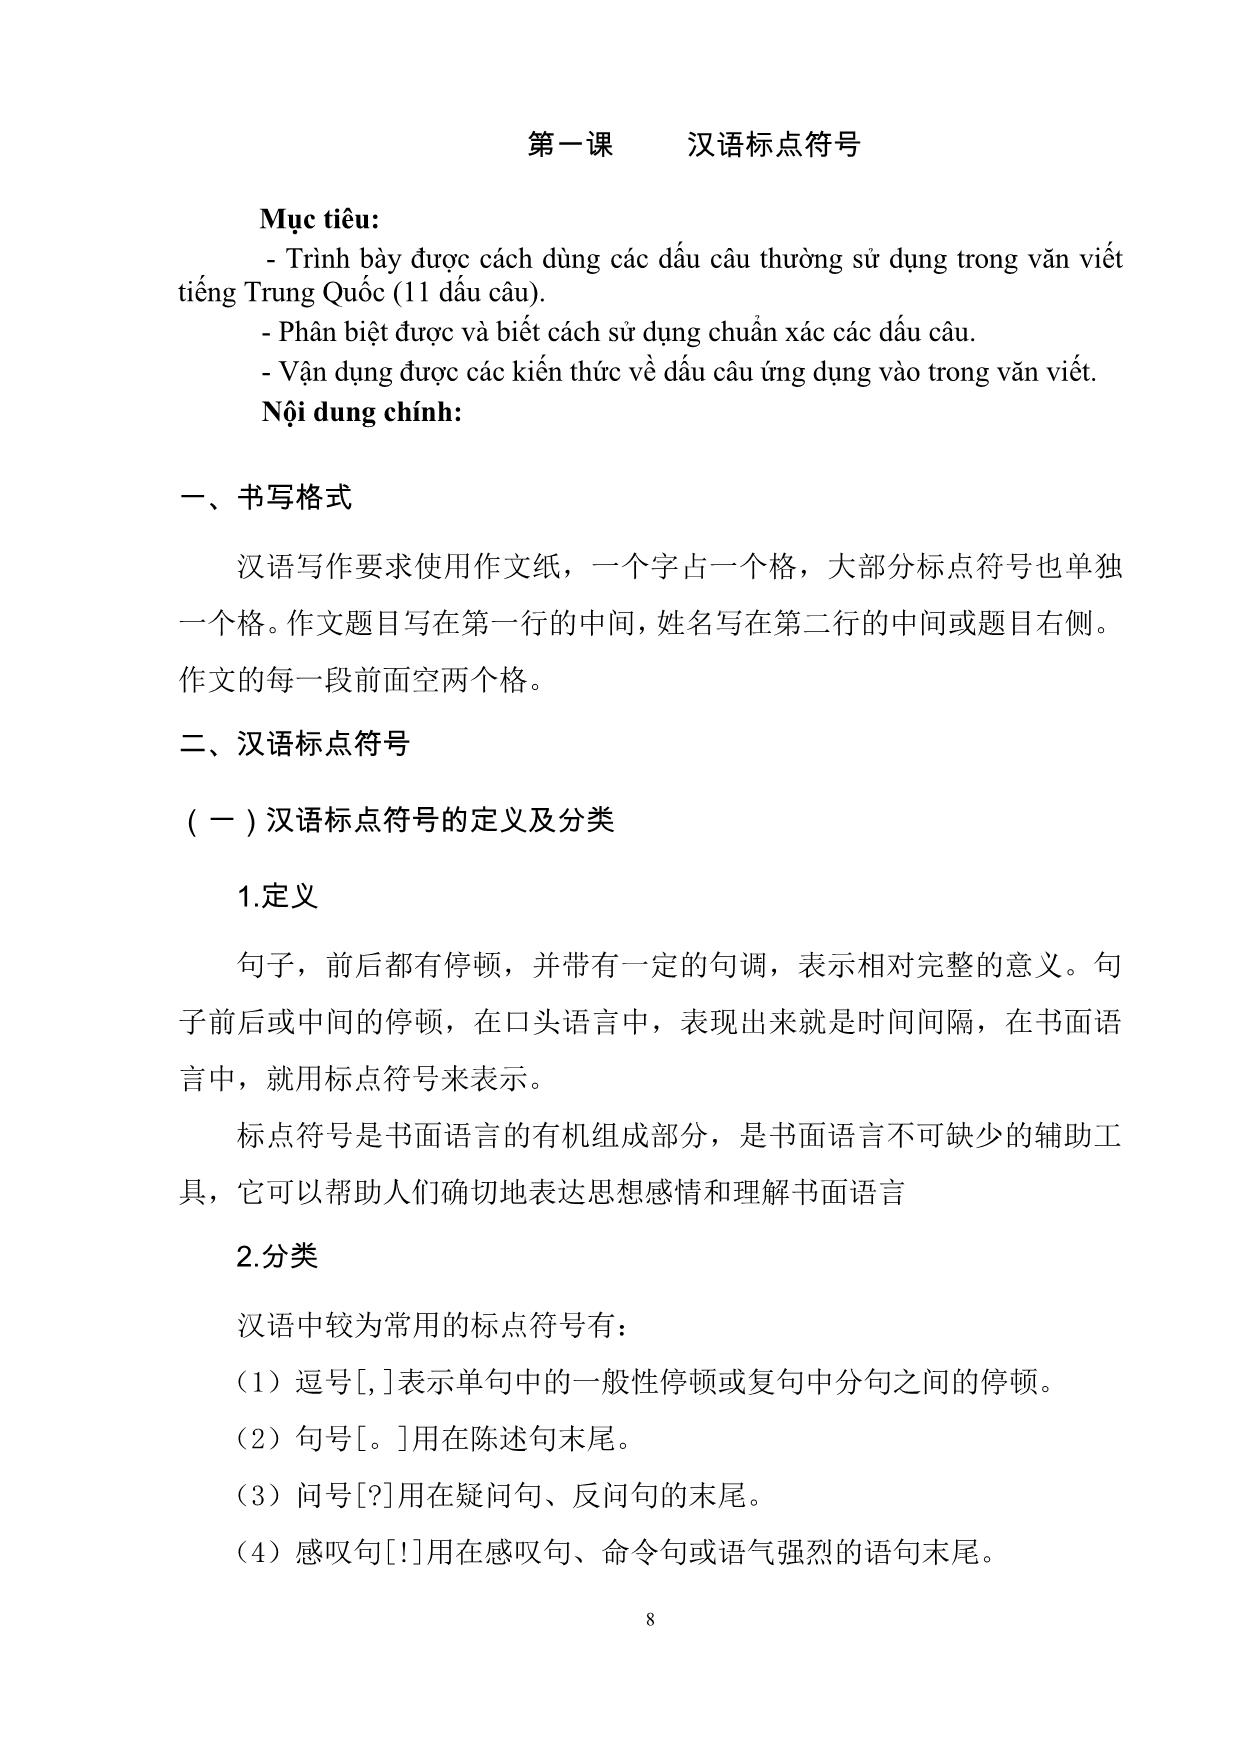 Giáo trình Tiếng Trung Quốc viết I trang 9